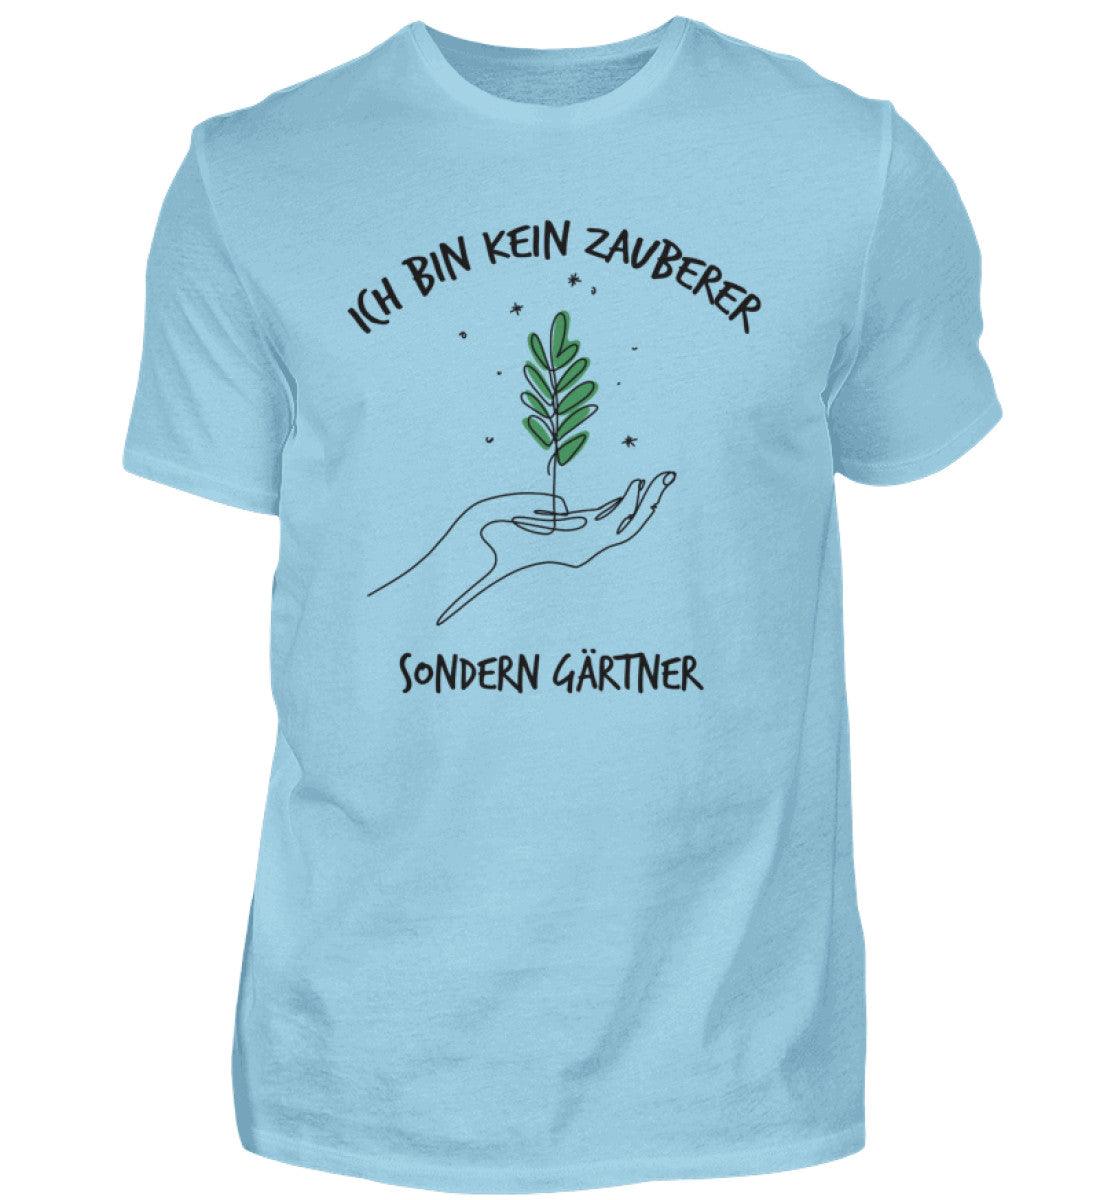 Ich bin kein Zauberer, sondern Gärtner - Unisex Shirt - PflanzenFan